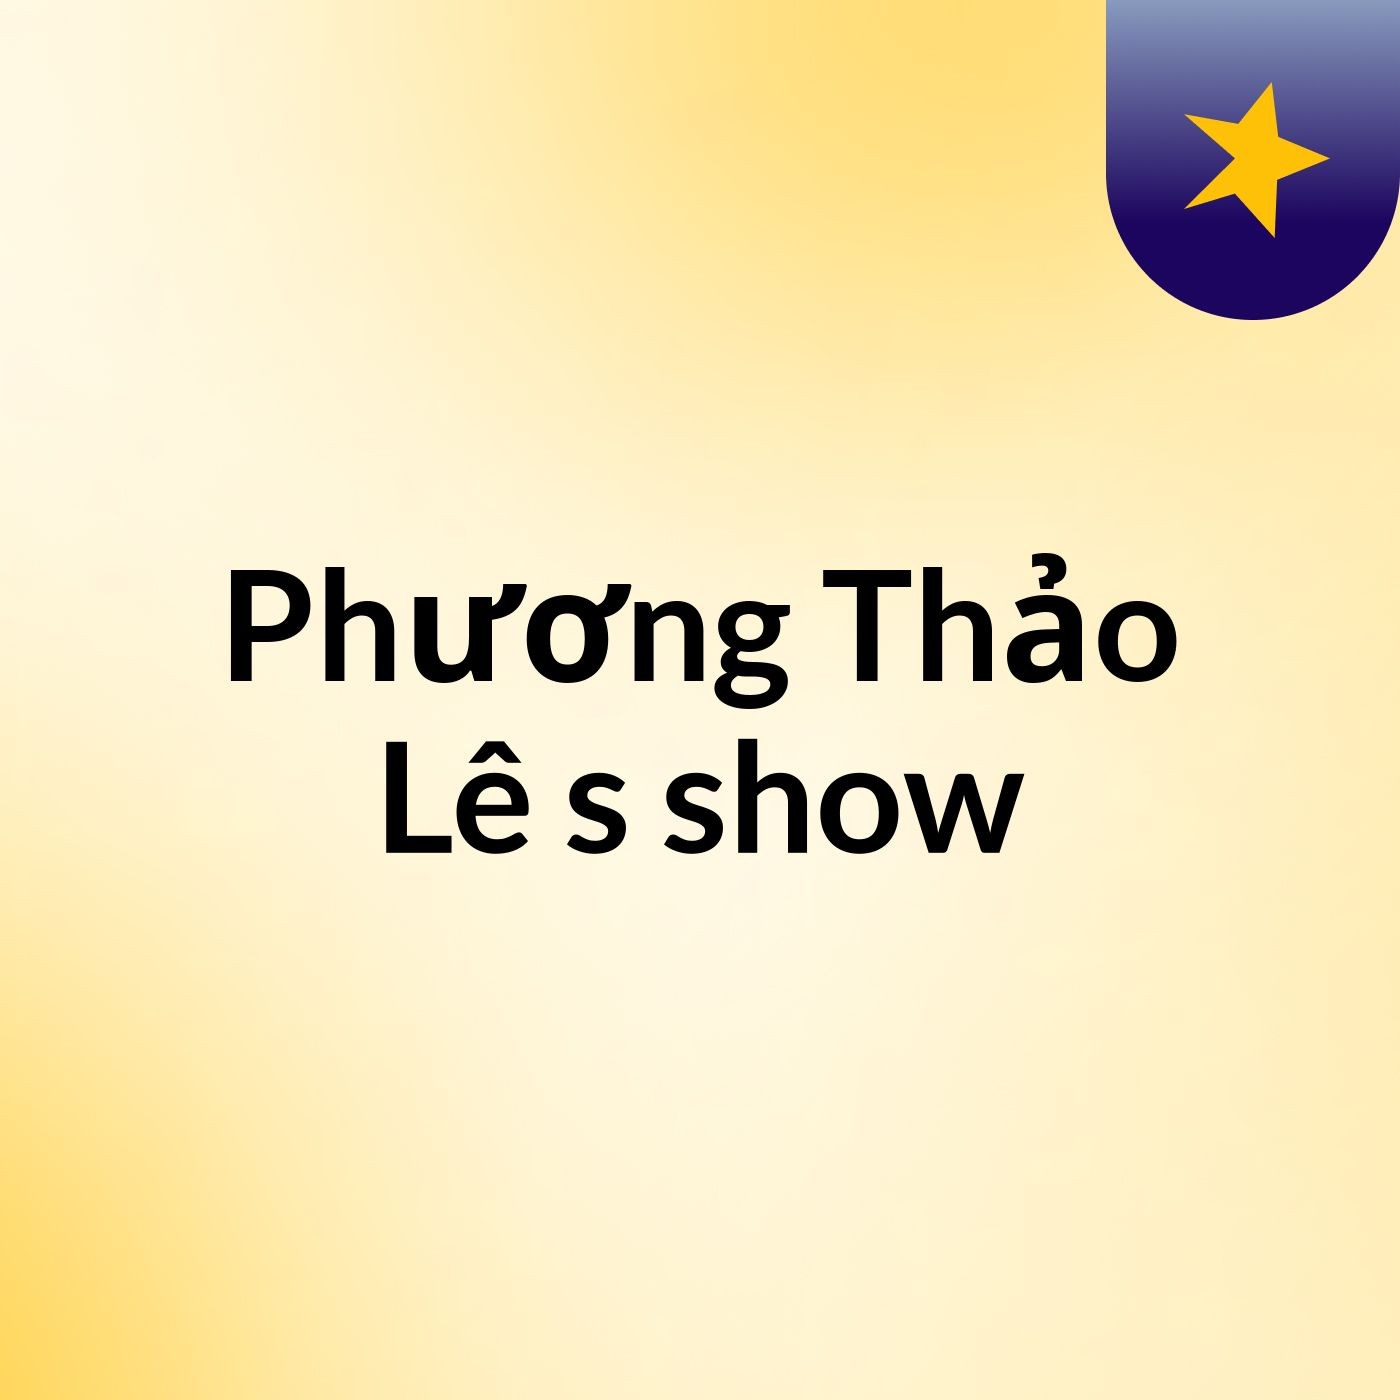 Phương Thảo Lê's show